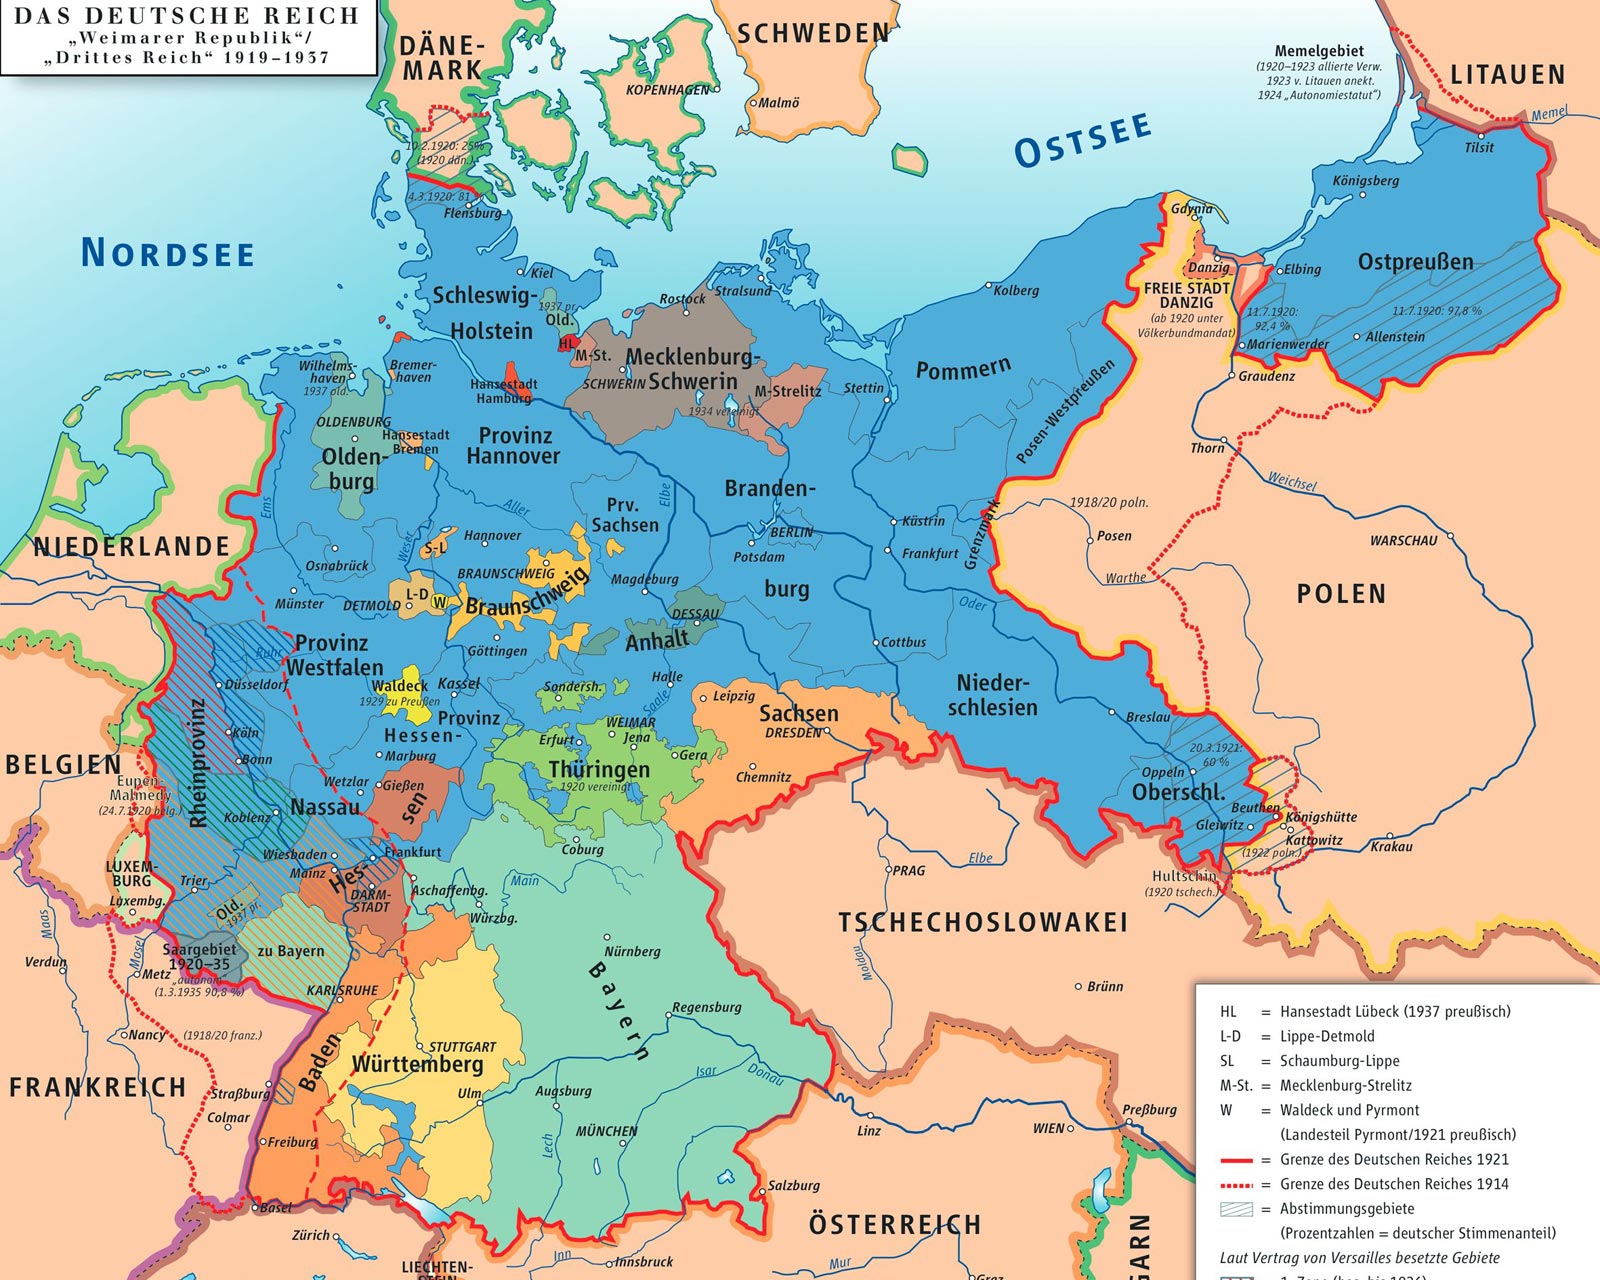 Карта Германии после 1919 года.